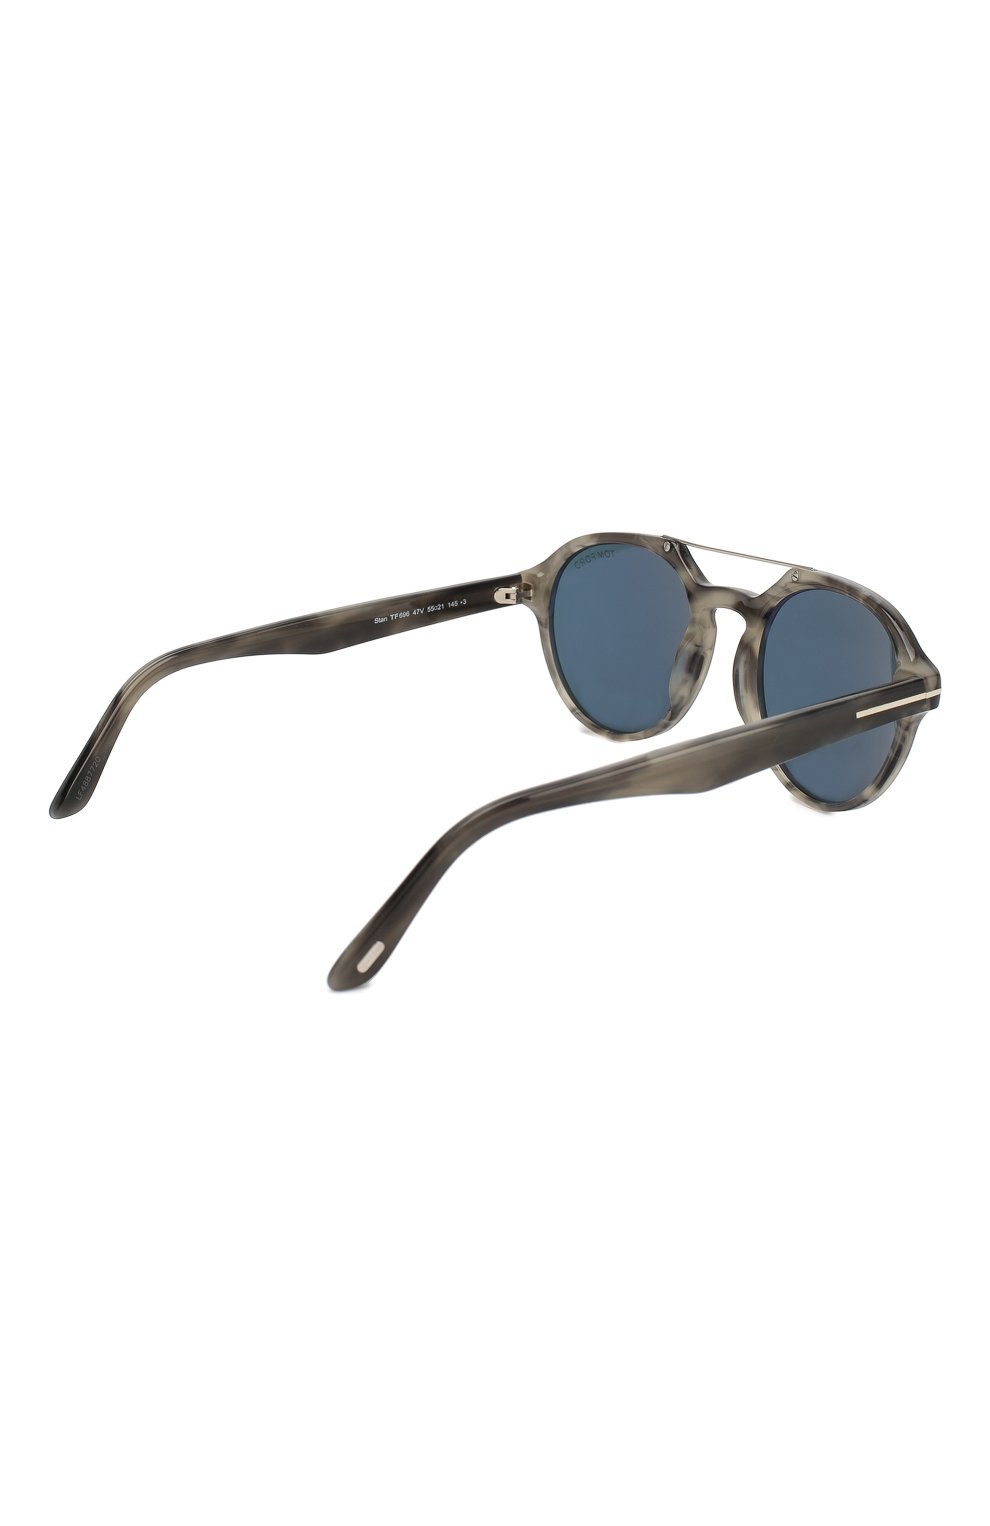 Мужские серые солнцезащитные очки TOM FORD купить в интернет-магазине